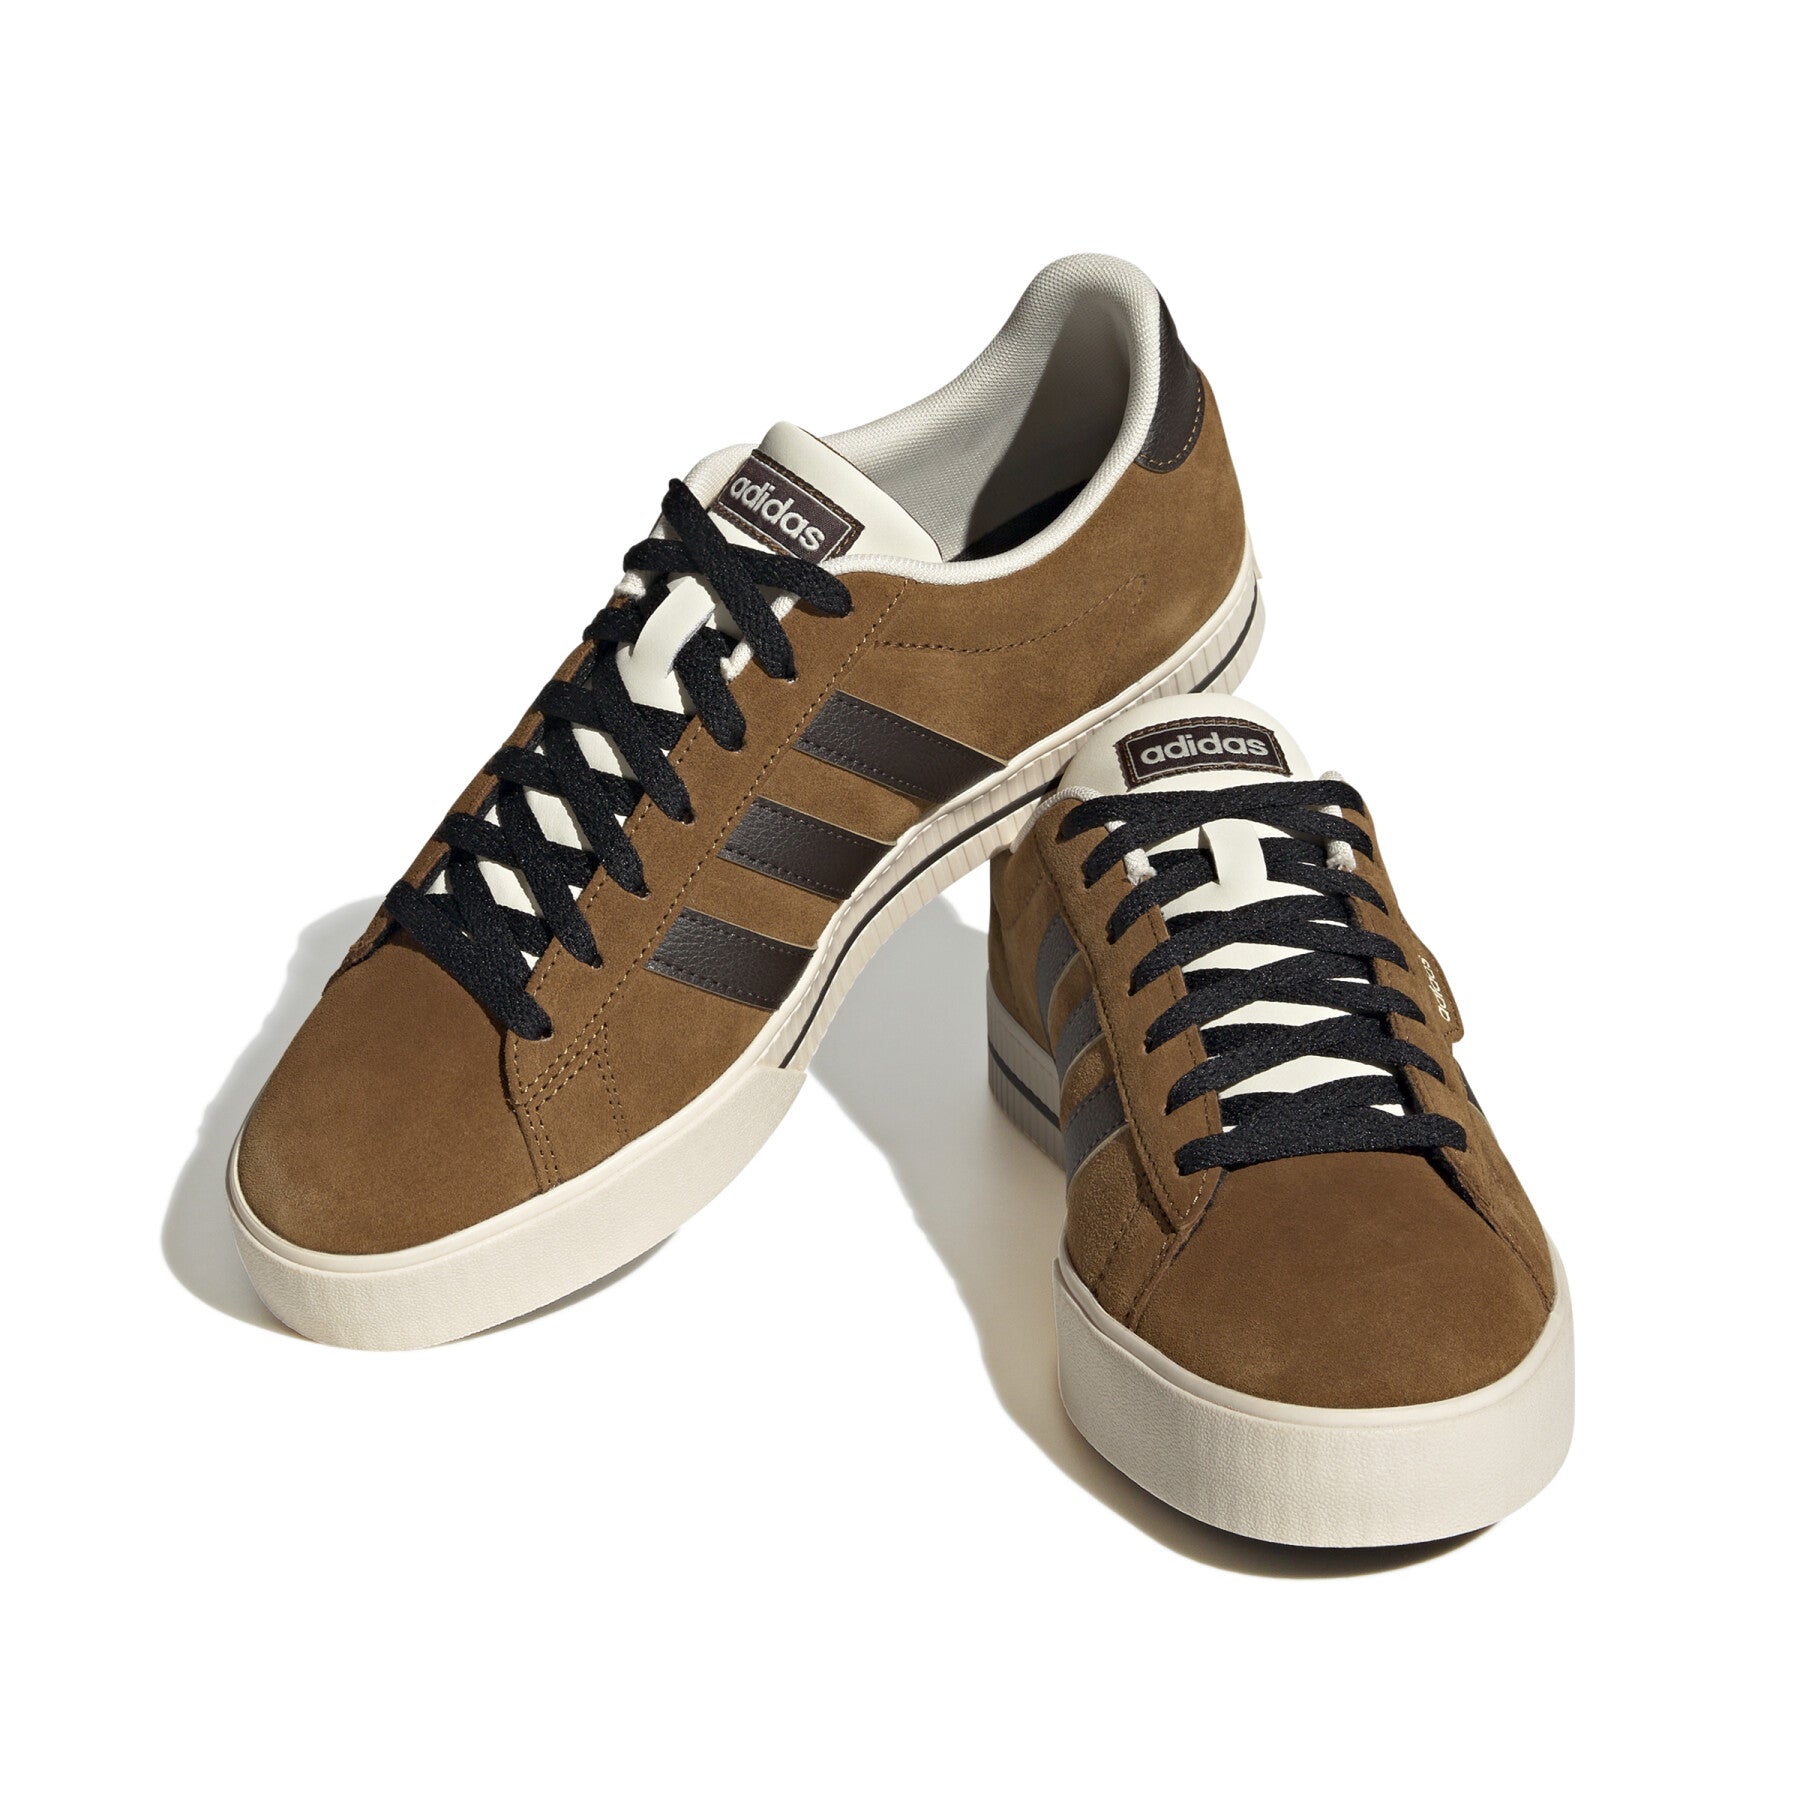 A-A68 (Adidas daily 3.0 shoes brostr/dark brown/ecrtin) 112395771